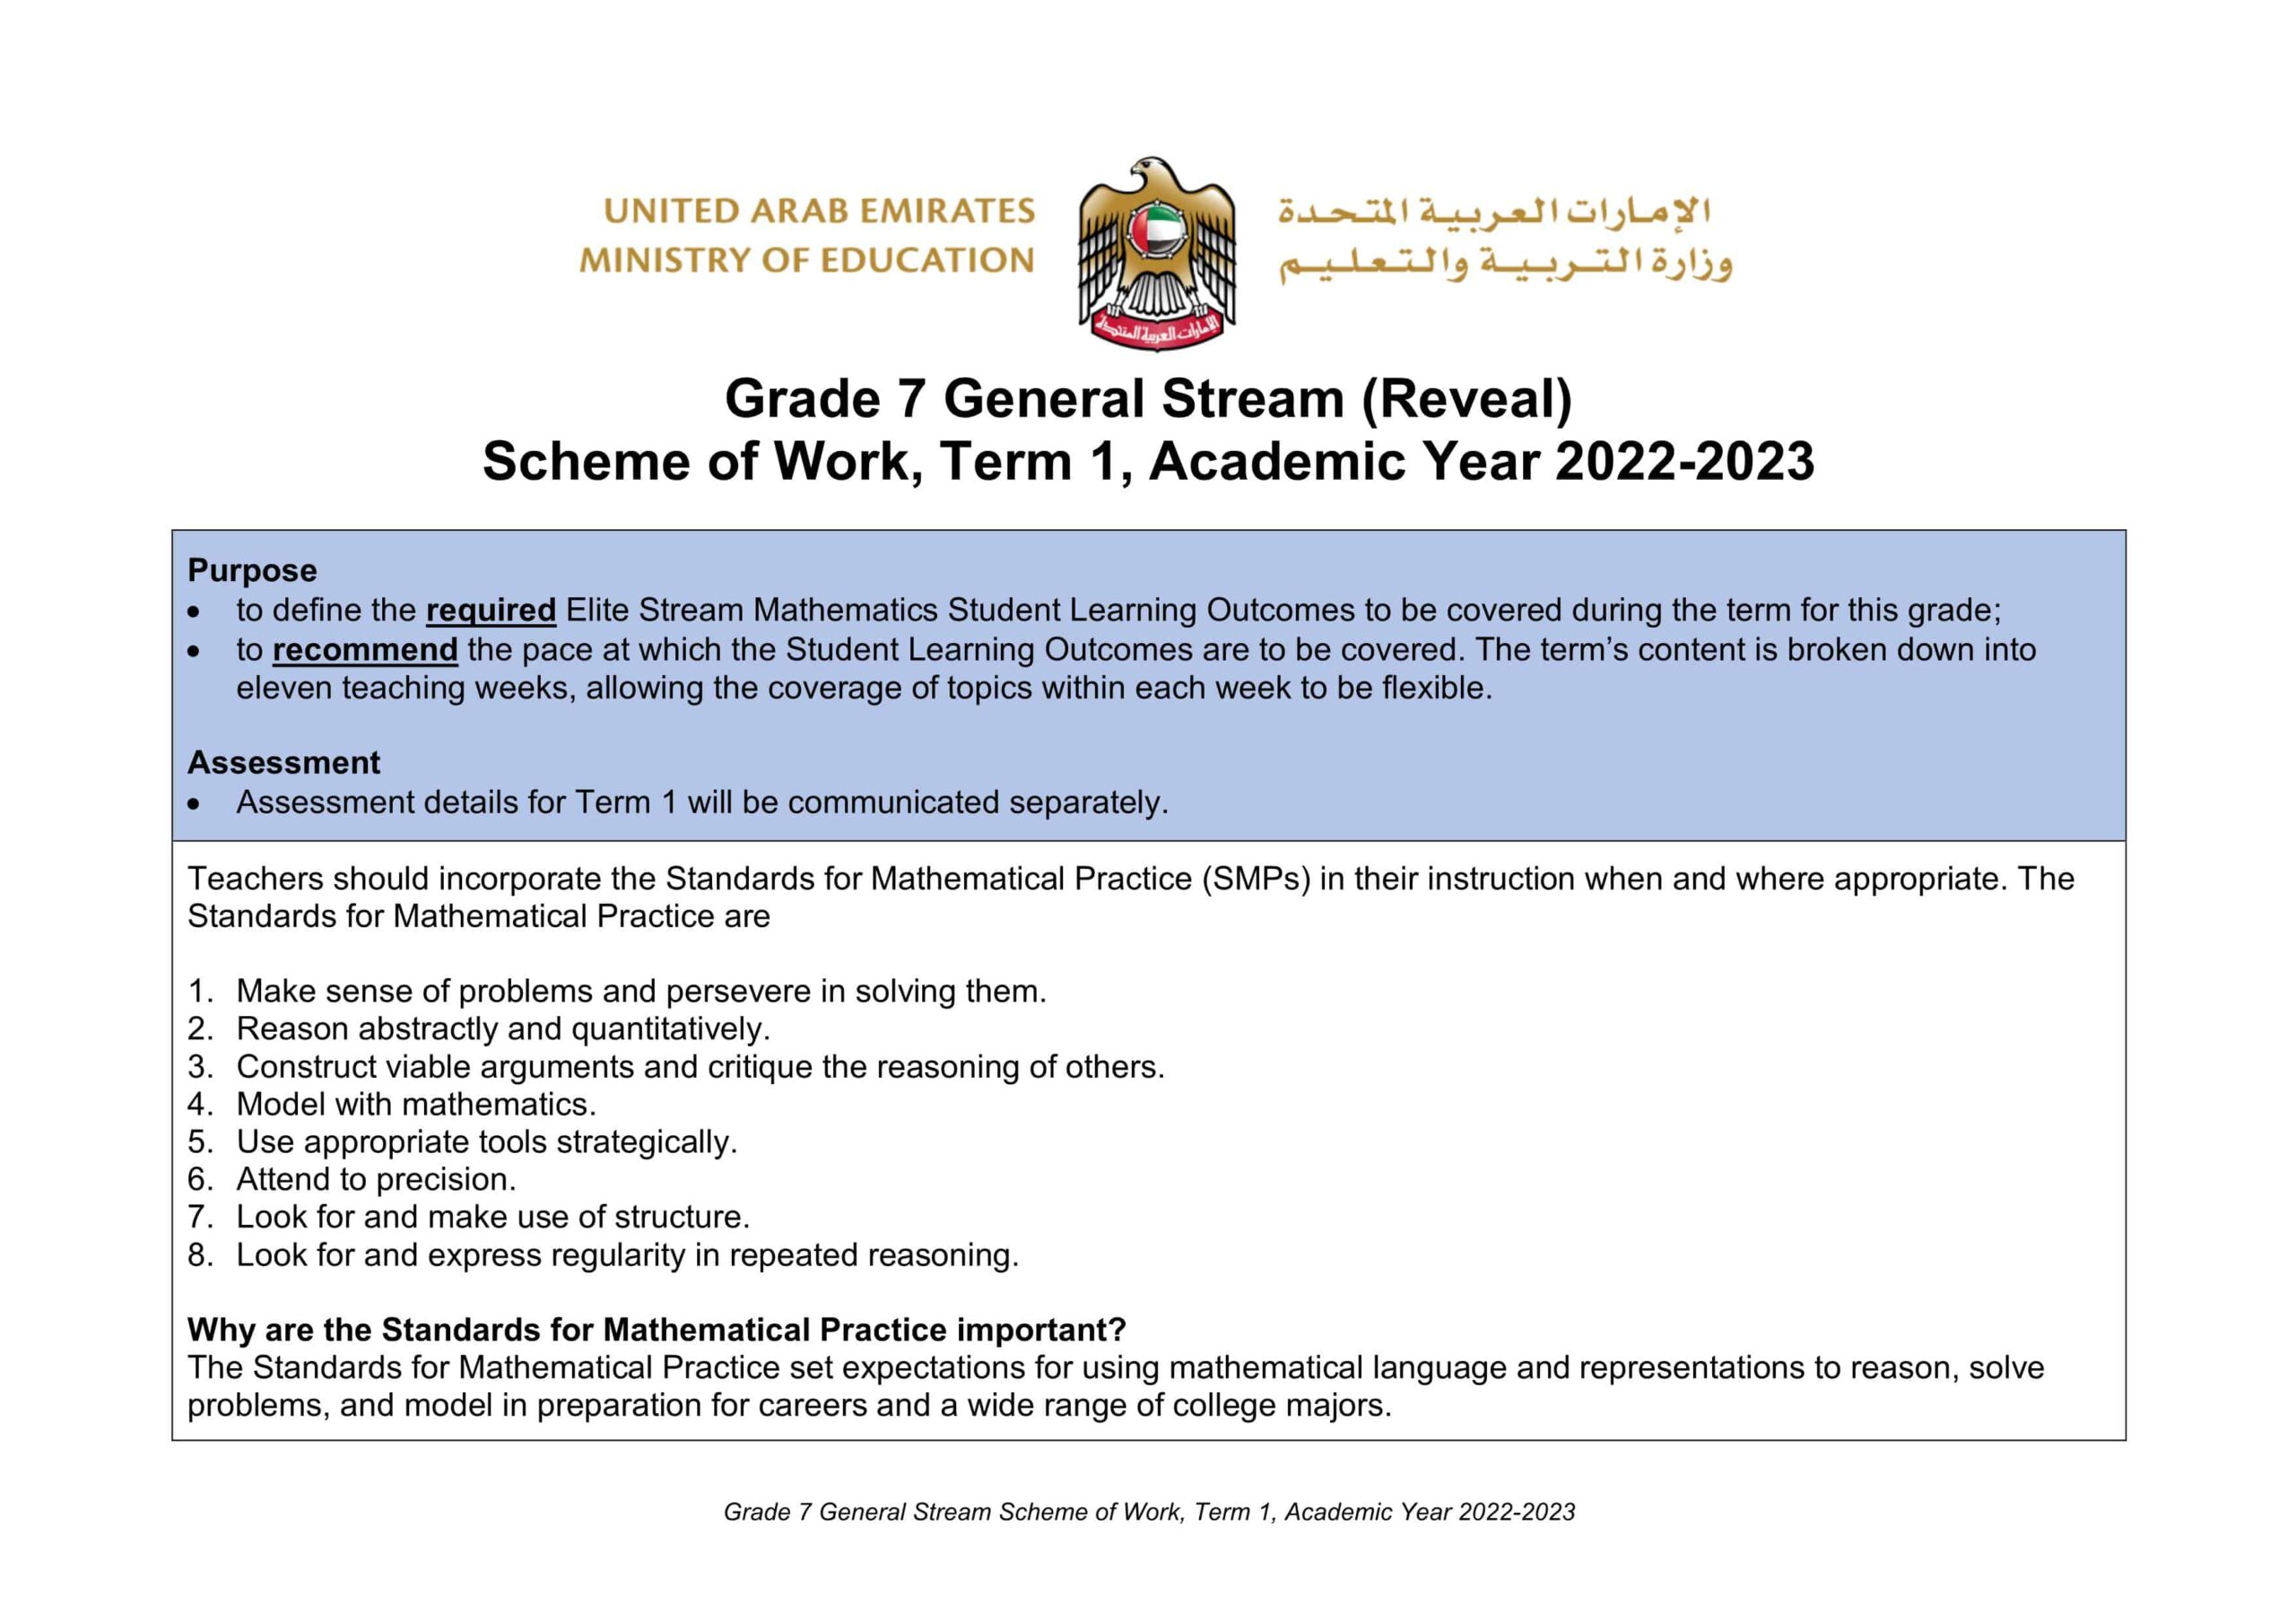 الخطة الفصلية Scheme of Work الرياضيات المتكاملة Reveal الصف السابع الفصل الدراسي الأول 2022-2023